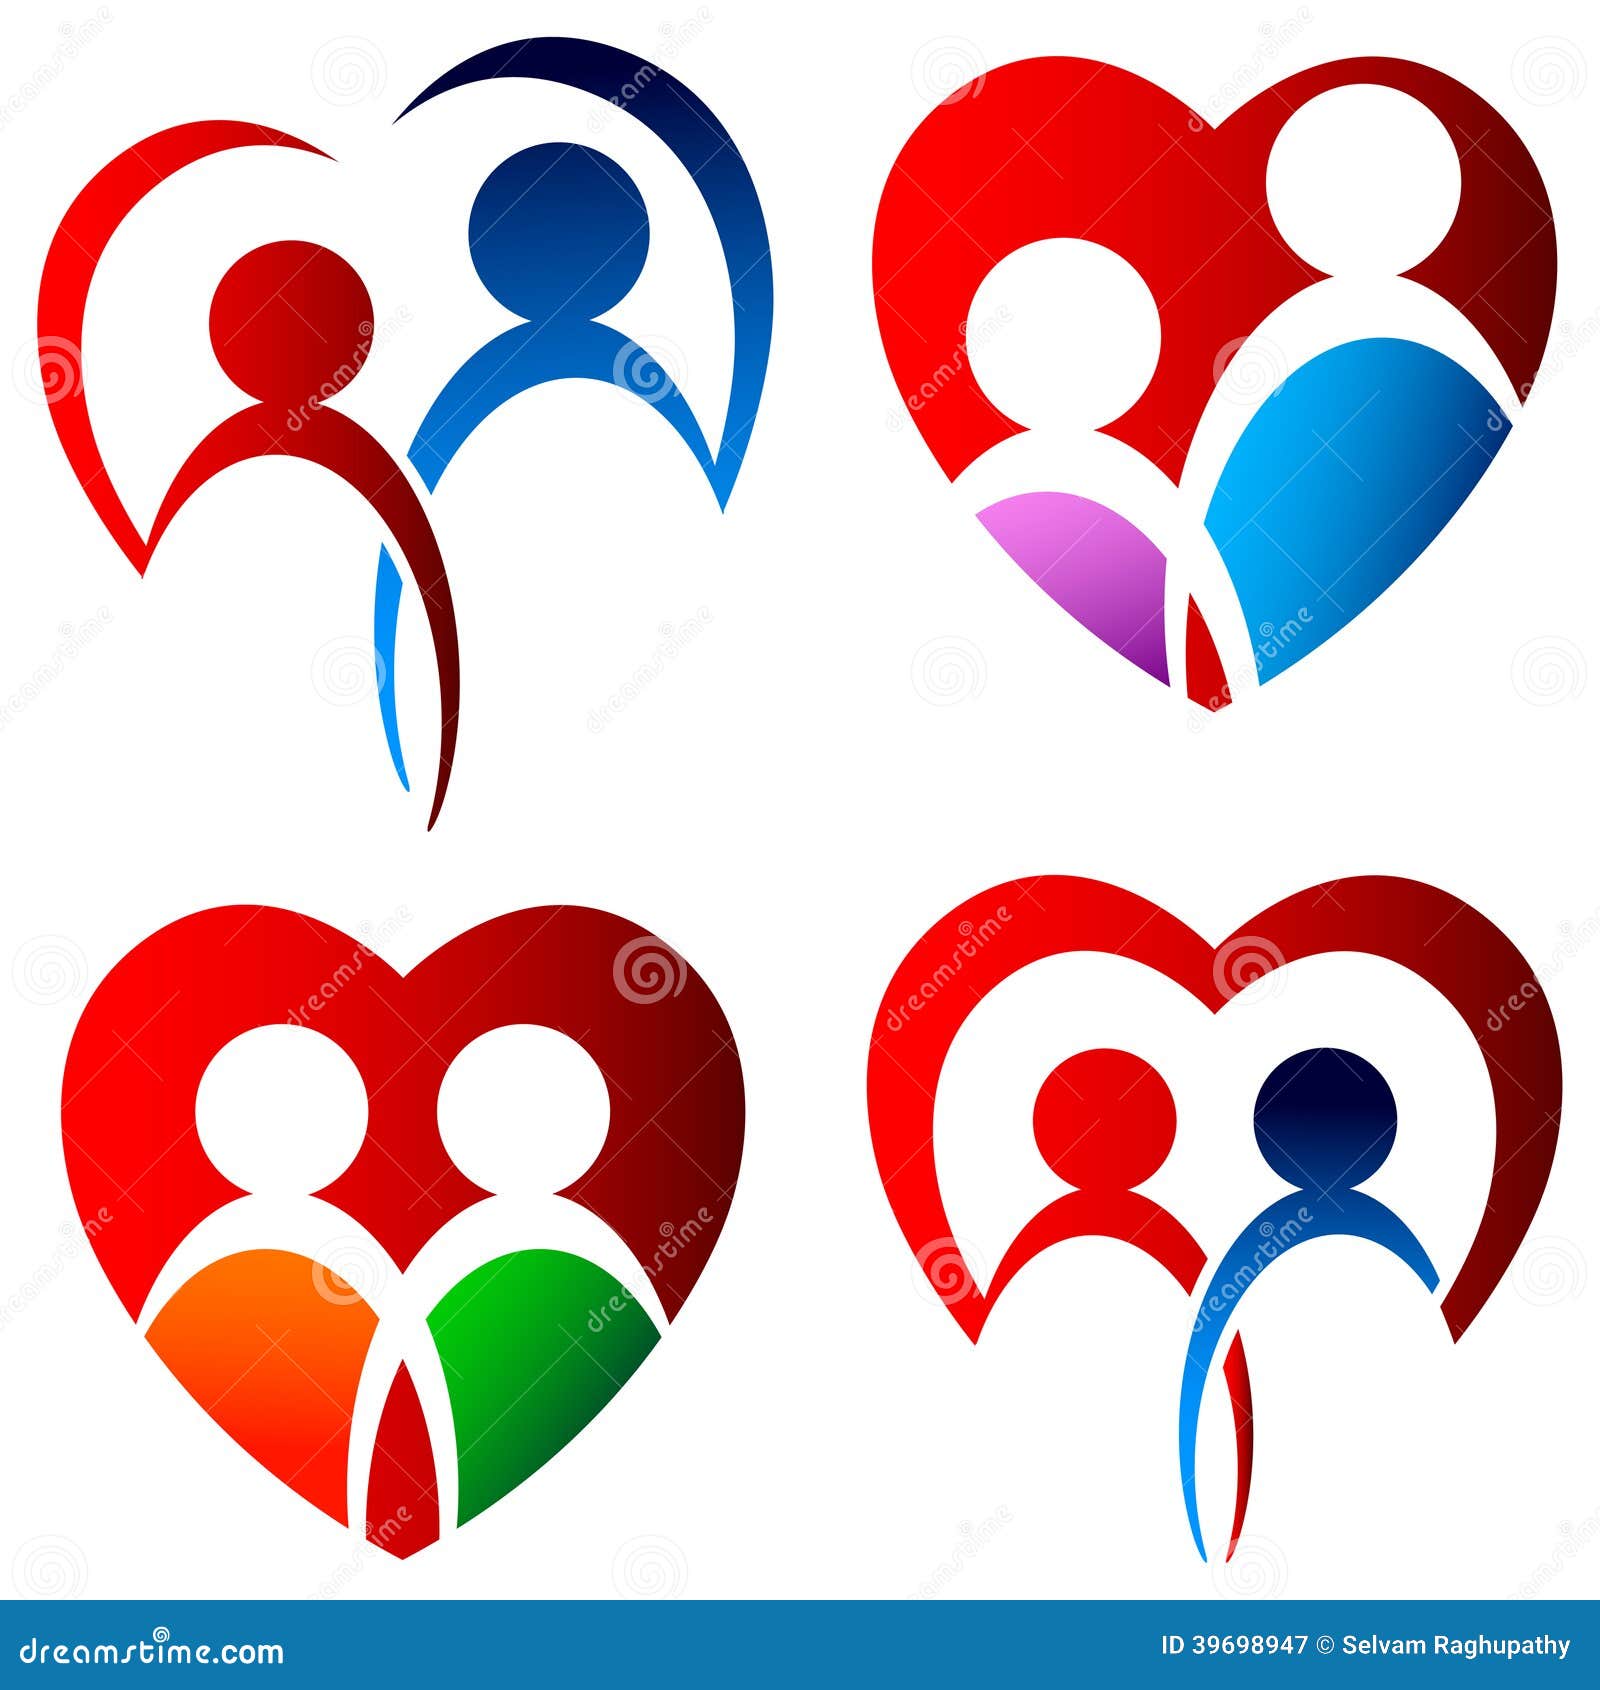 lovers logo set